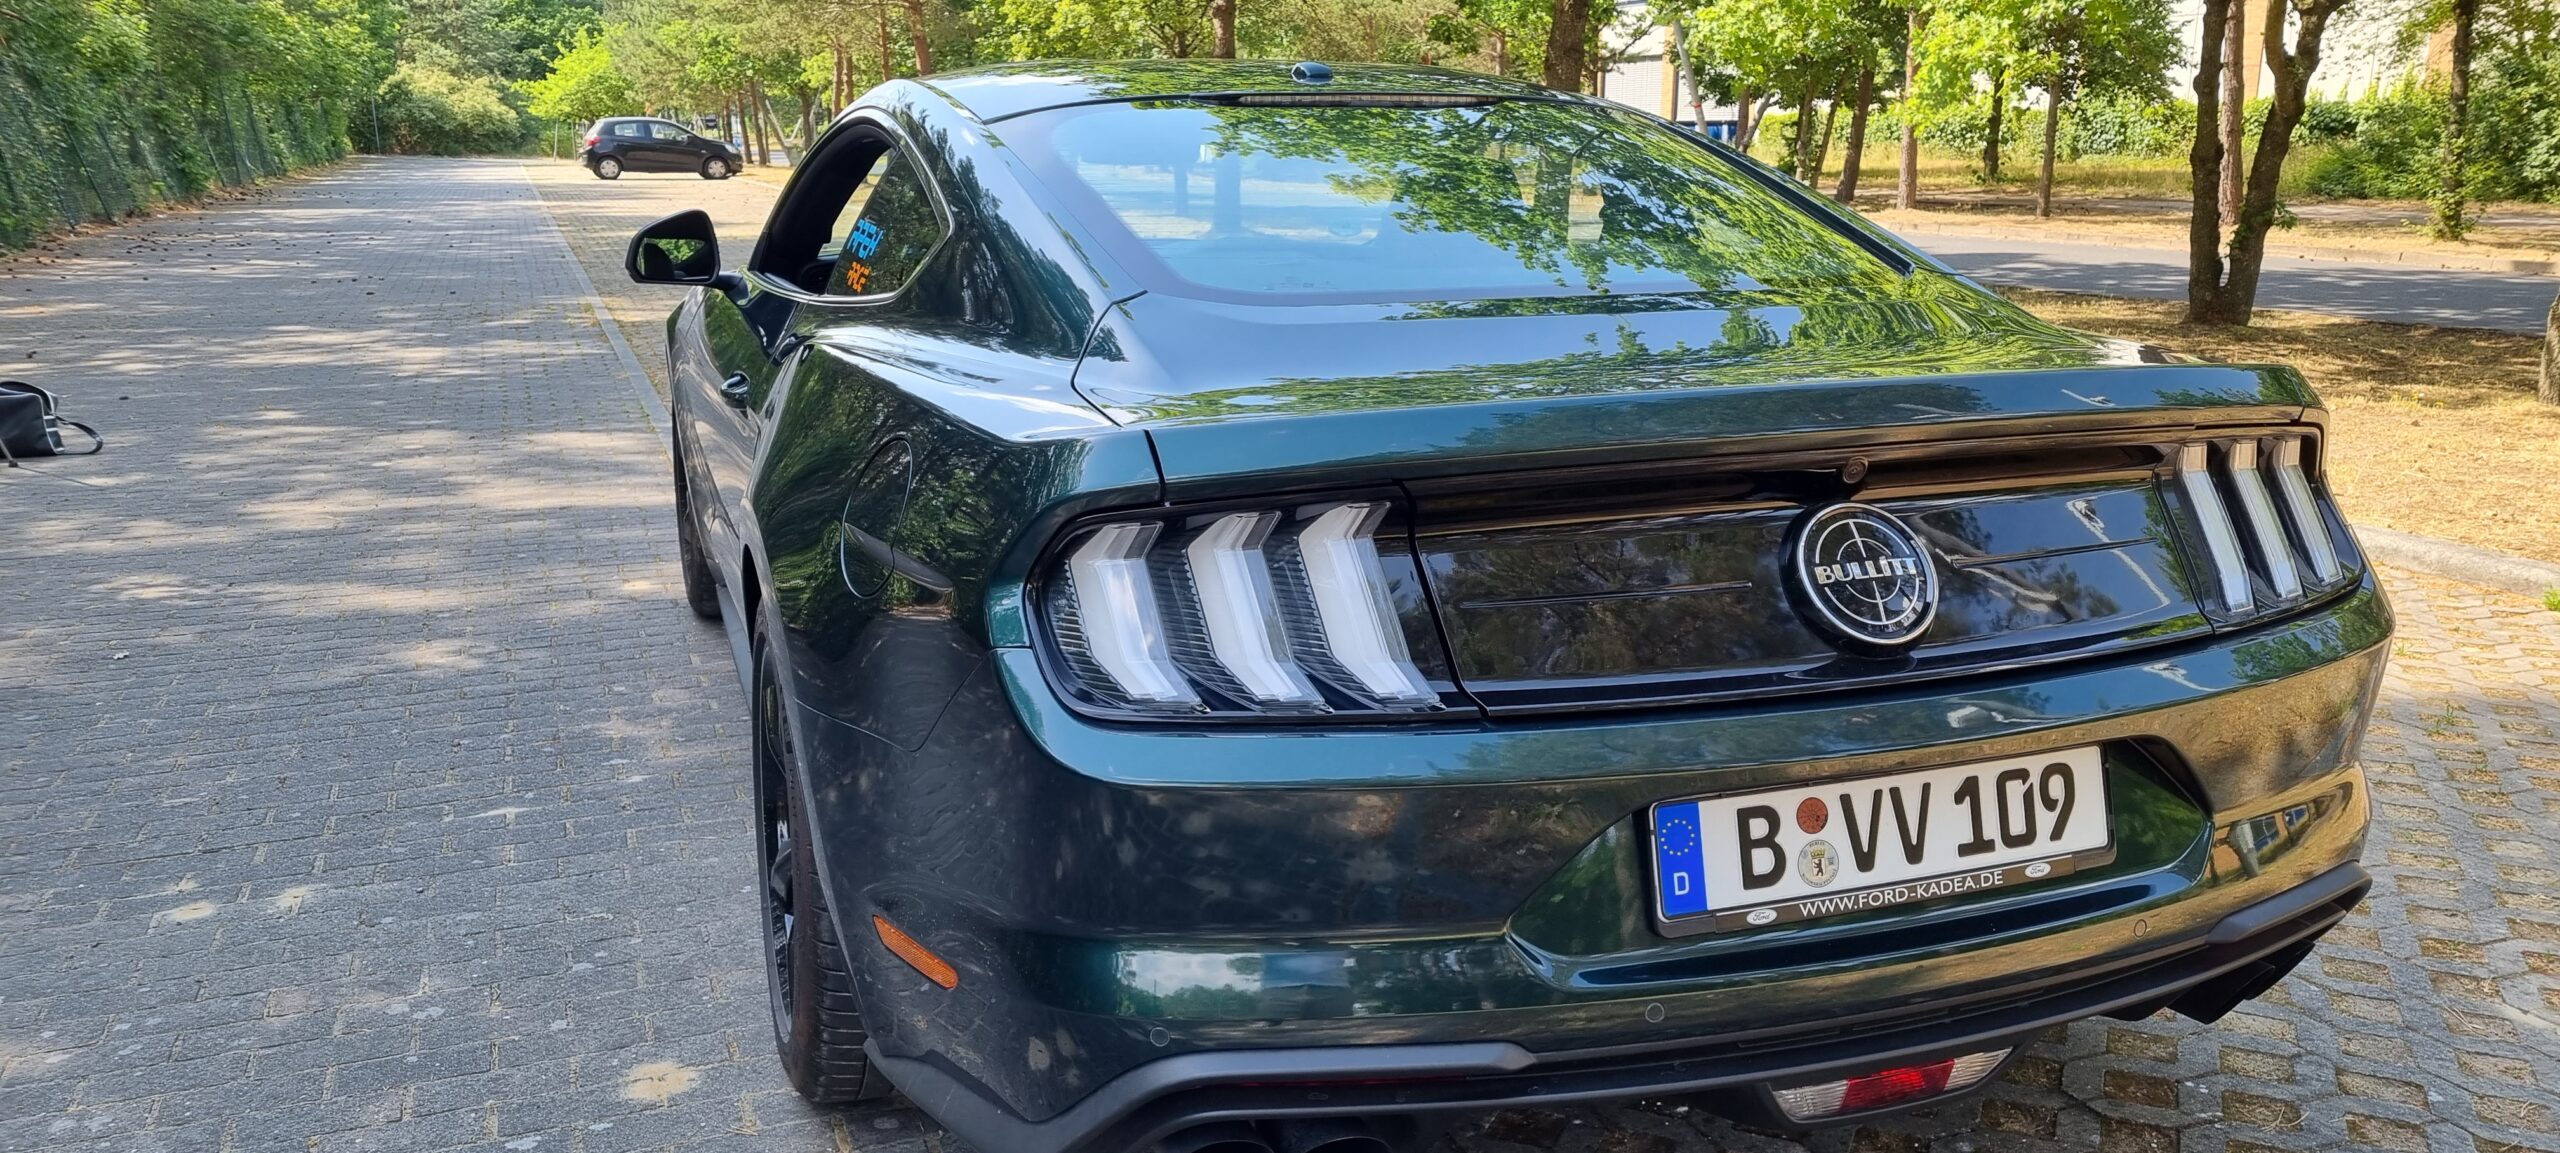 Green 2019 Ford Mustang Bullitt Tail